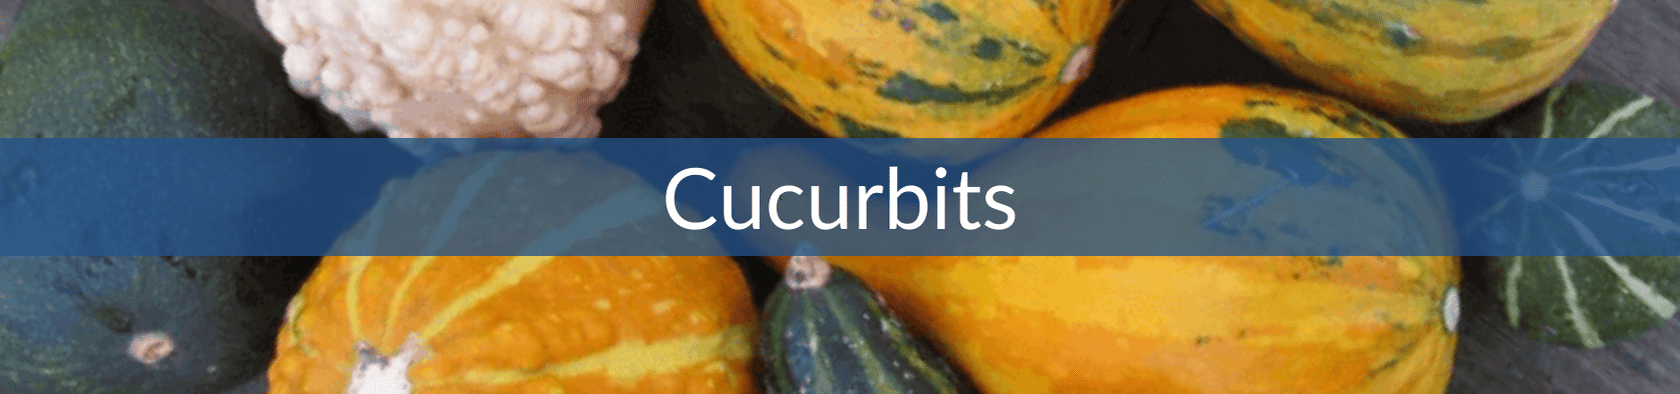 Cucurbits (1).png__PID:79b51260-4d6c-47a8-83c8-dfb9fd47c099